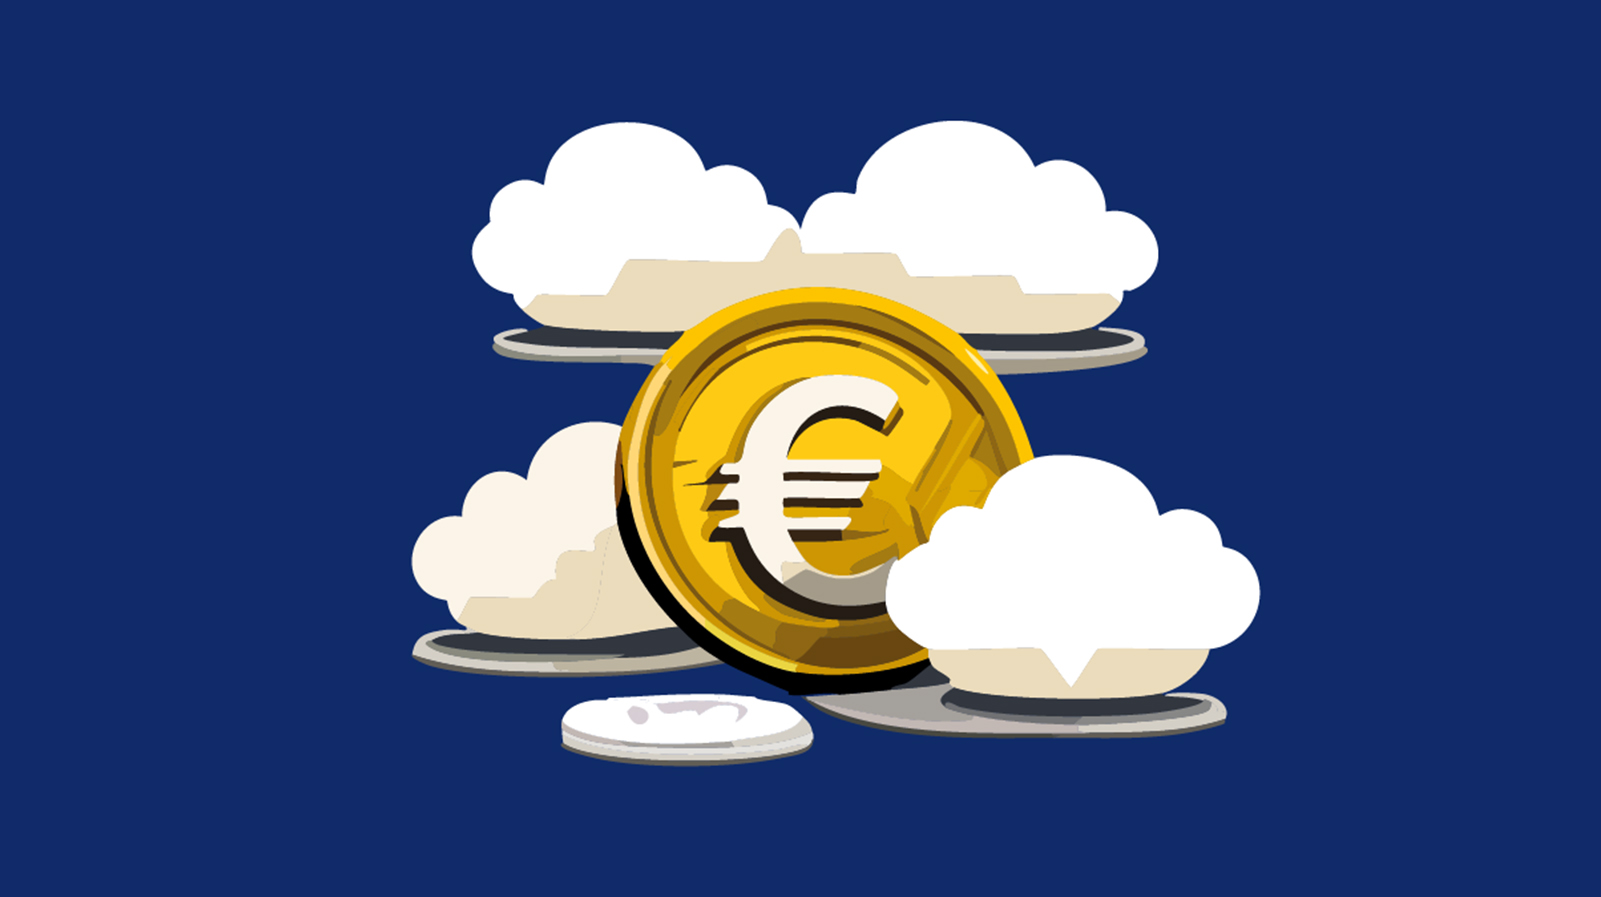 Illustration einer Geld-Münze, die von Wolken umgehen ist. Symbolbild für eine aktuelle kununu Umfrage, die ergab, dass viele Deutsche, das Entgeltransparenzgesetz nicht kennen.